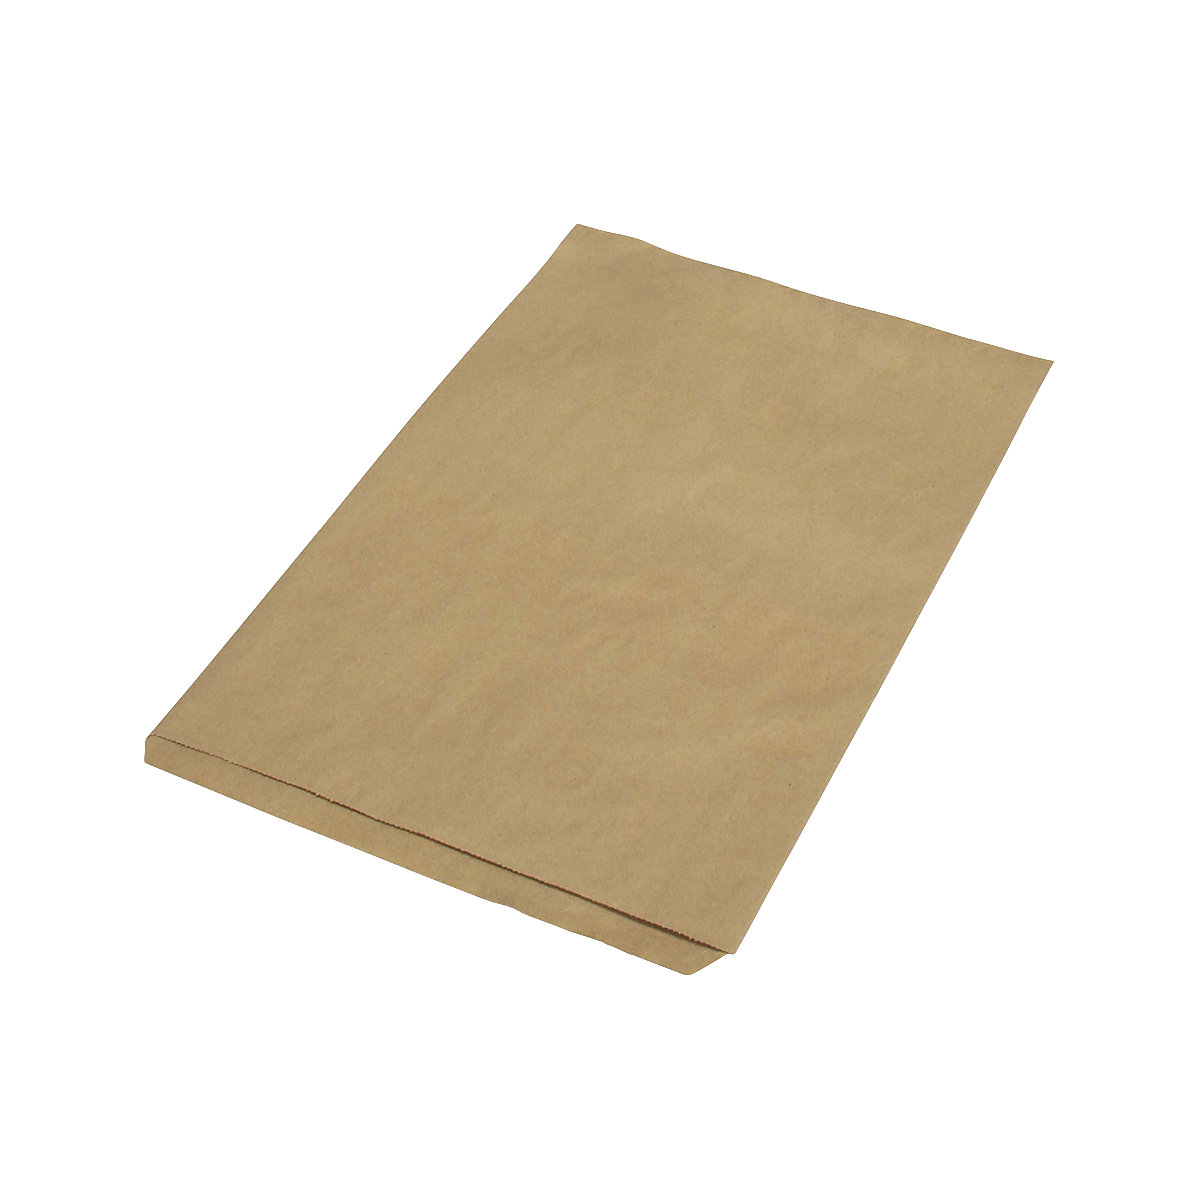 Sacchetti piatti – terra, in carta riciclata, lungh. x largh. 350 x 230 mm, conf. da 1000 pz.-1